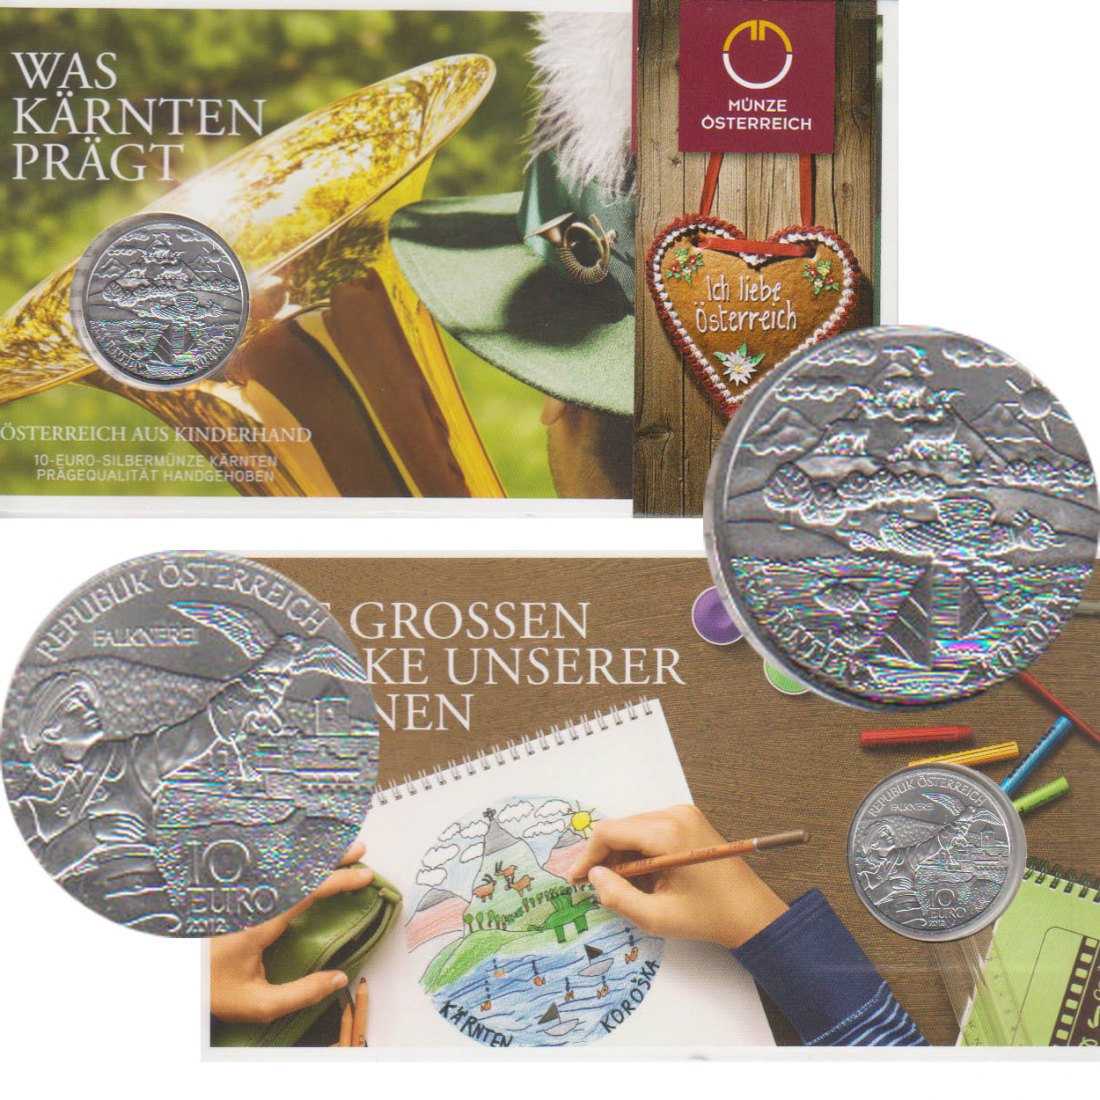  Offiz. 10 Euro Silbermünze Österreich *Was Kärnten prägt* 2012 *hgh* max 40.000St!   